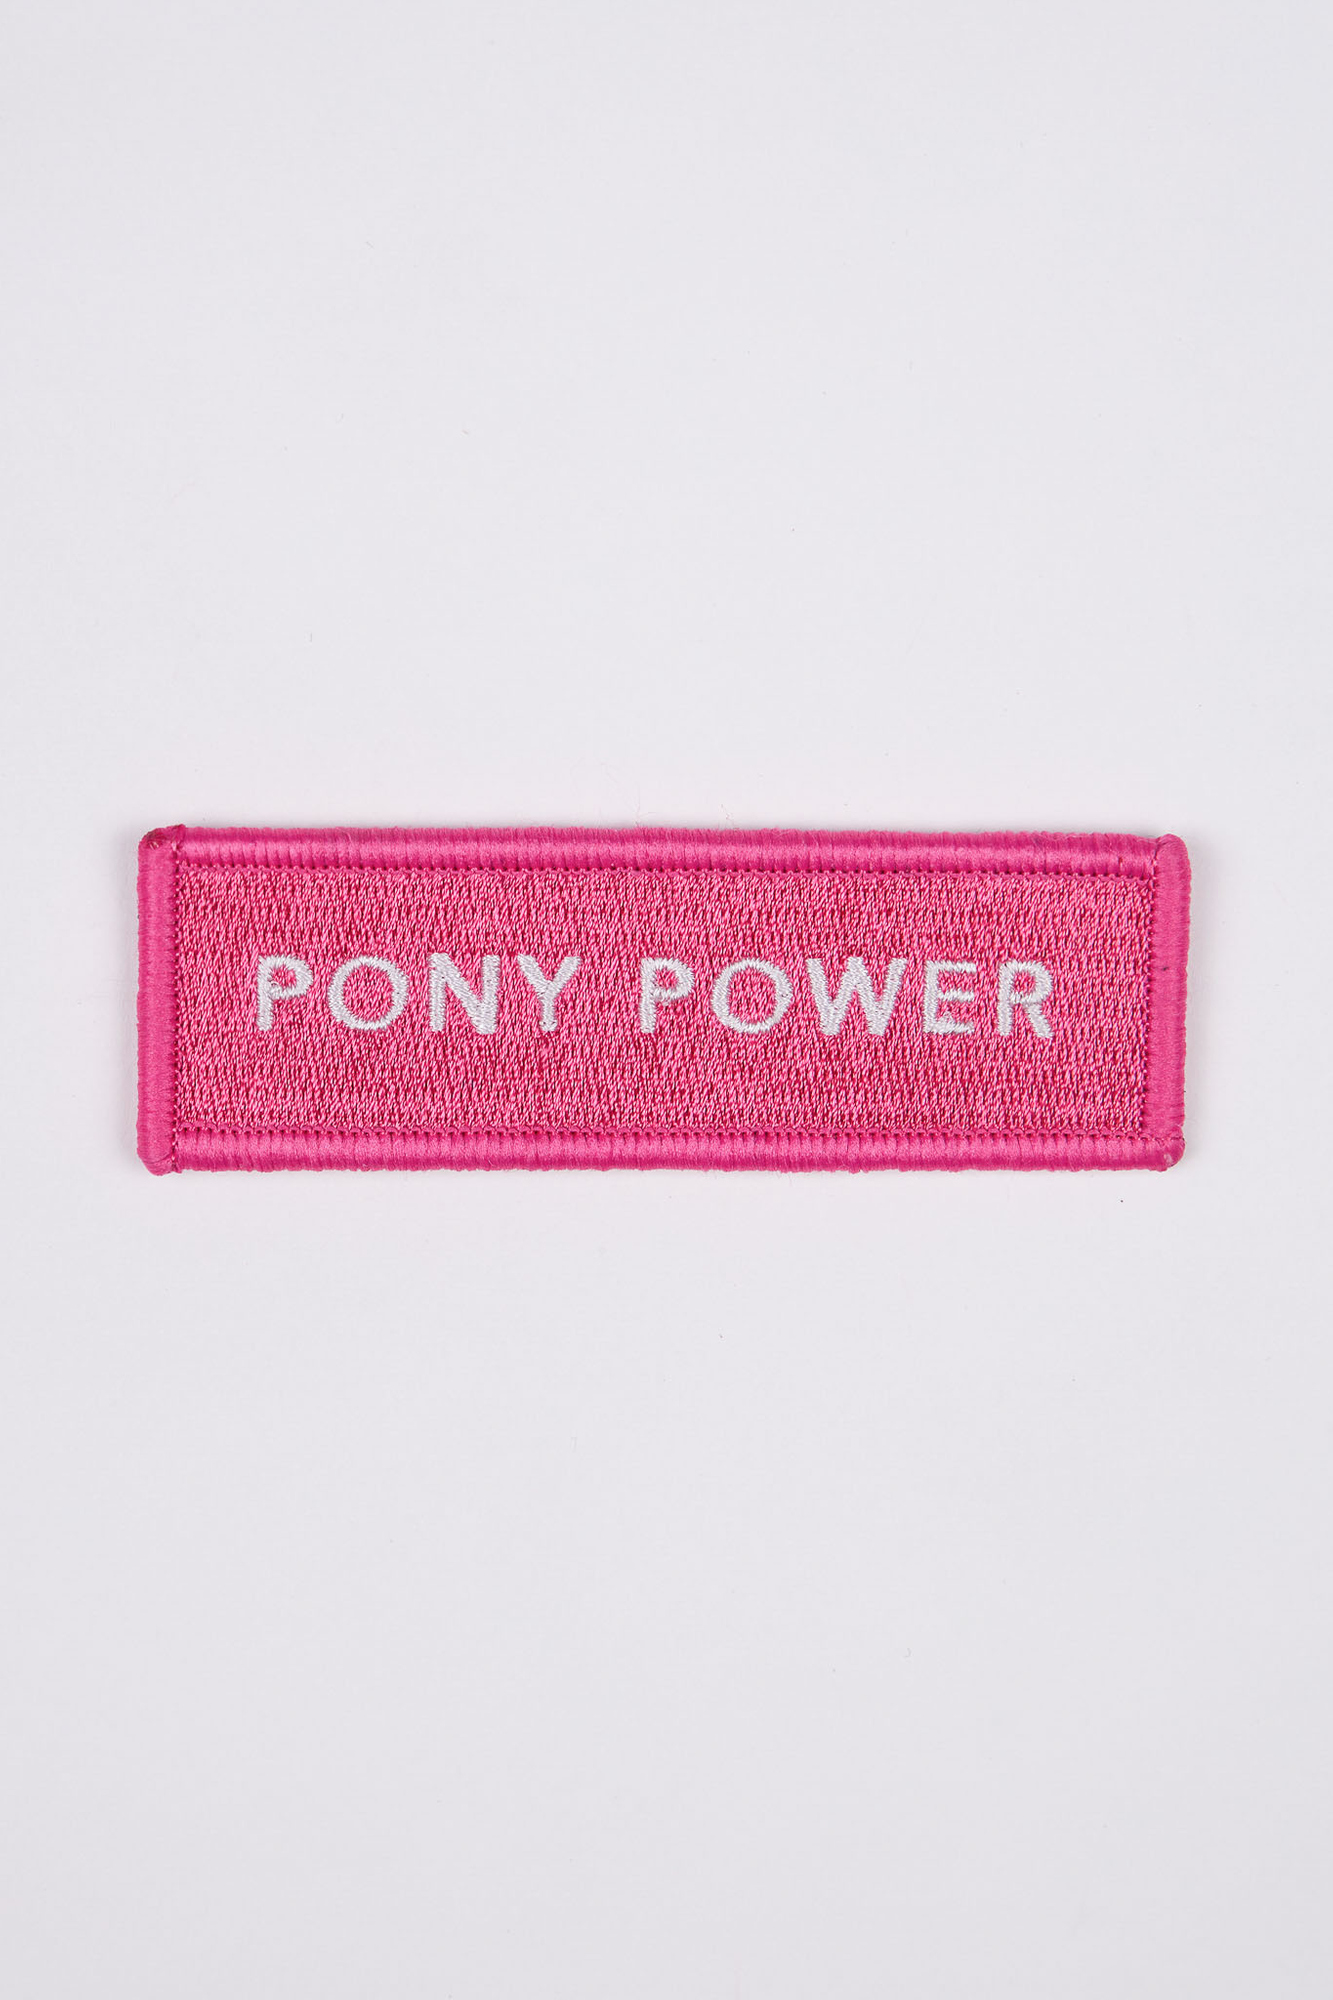 Pony Power Patch